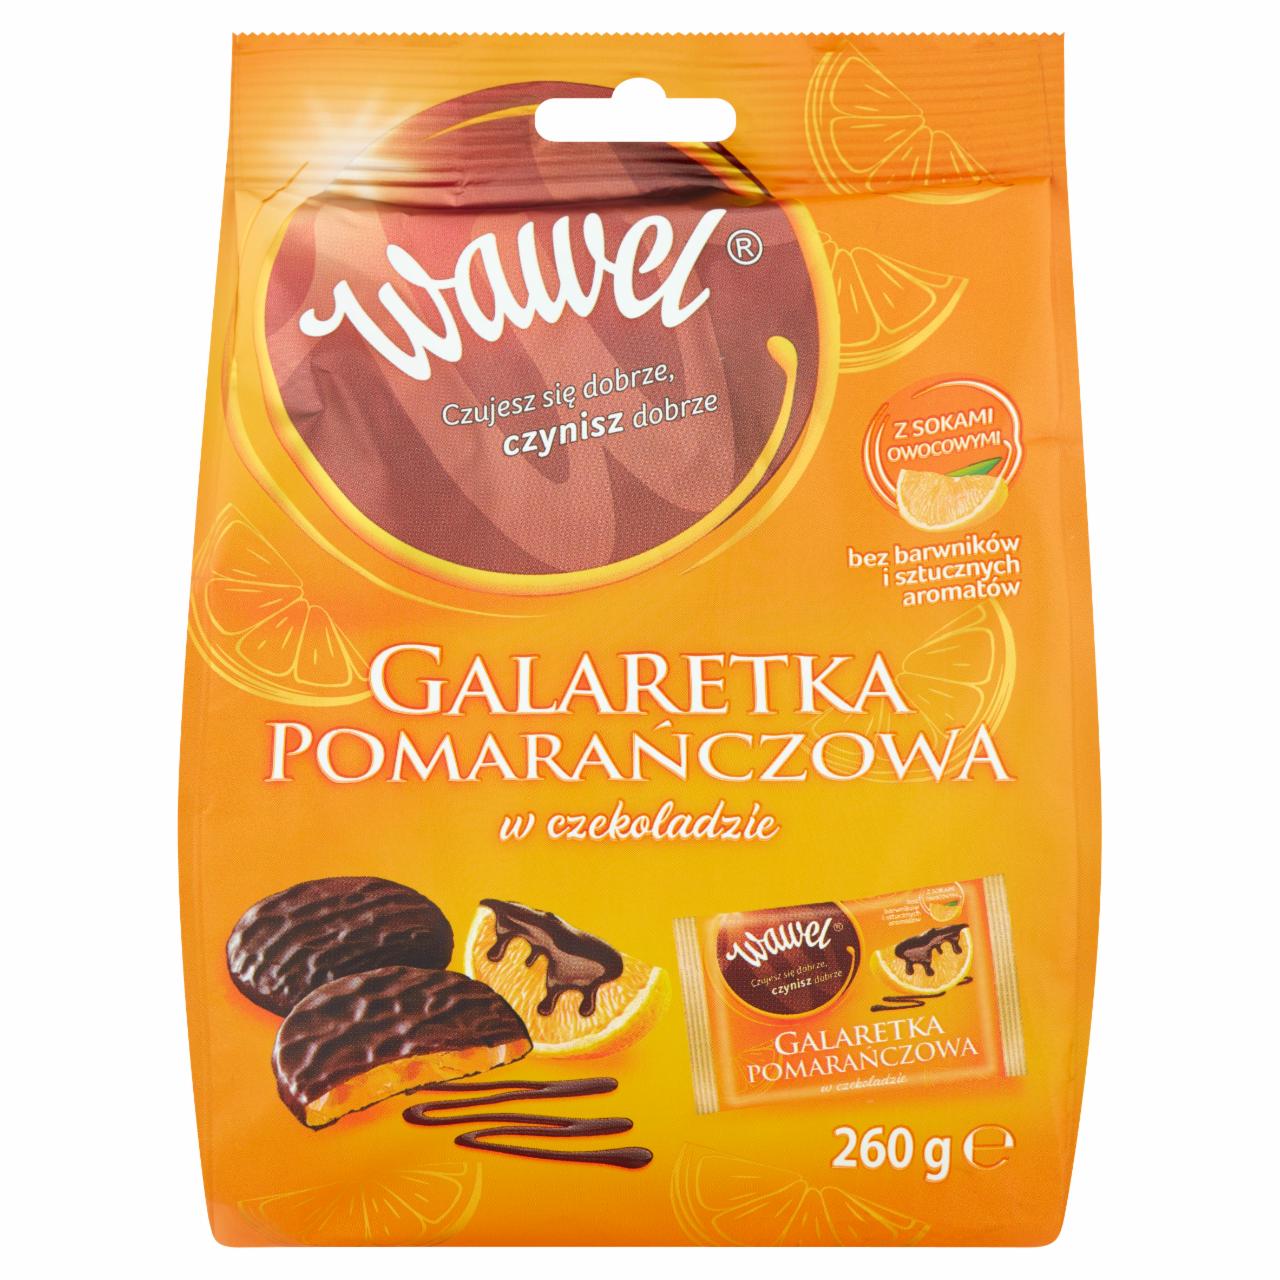 Zdjęcia - Wawel Galaretka pomarańczowa w czekoladzie 260 g